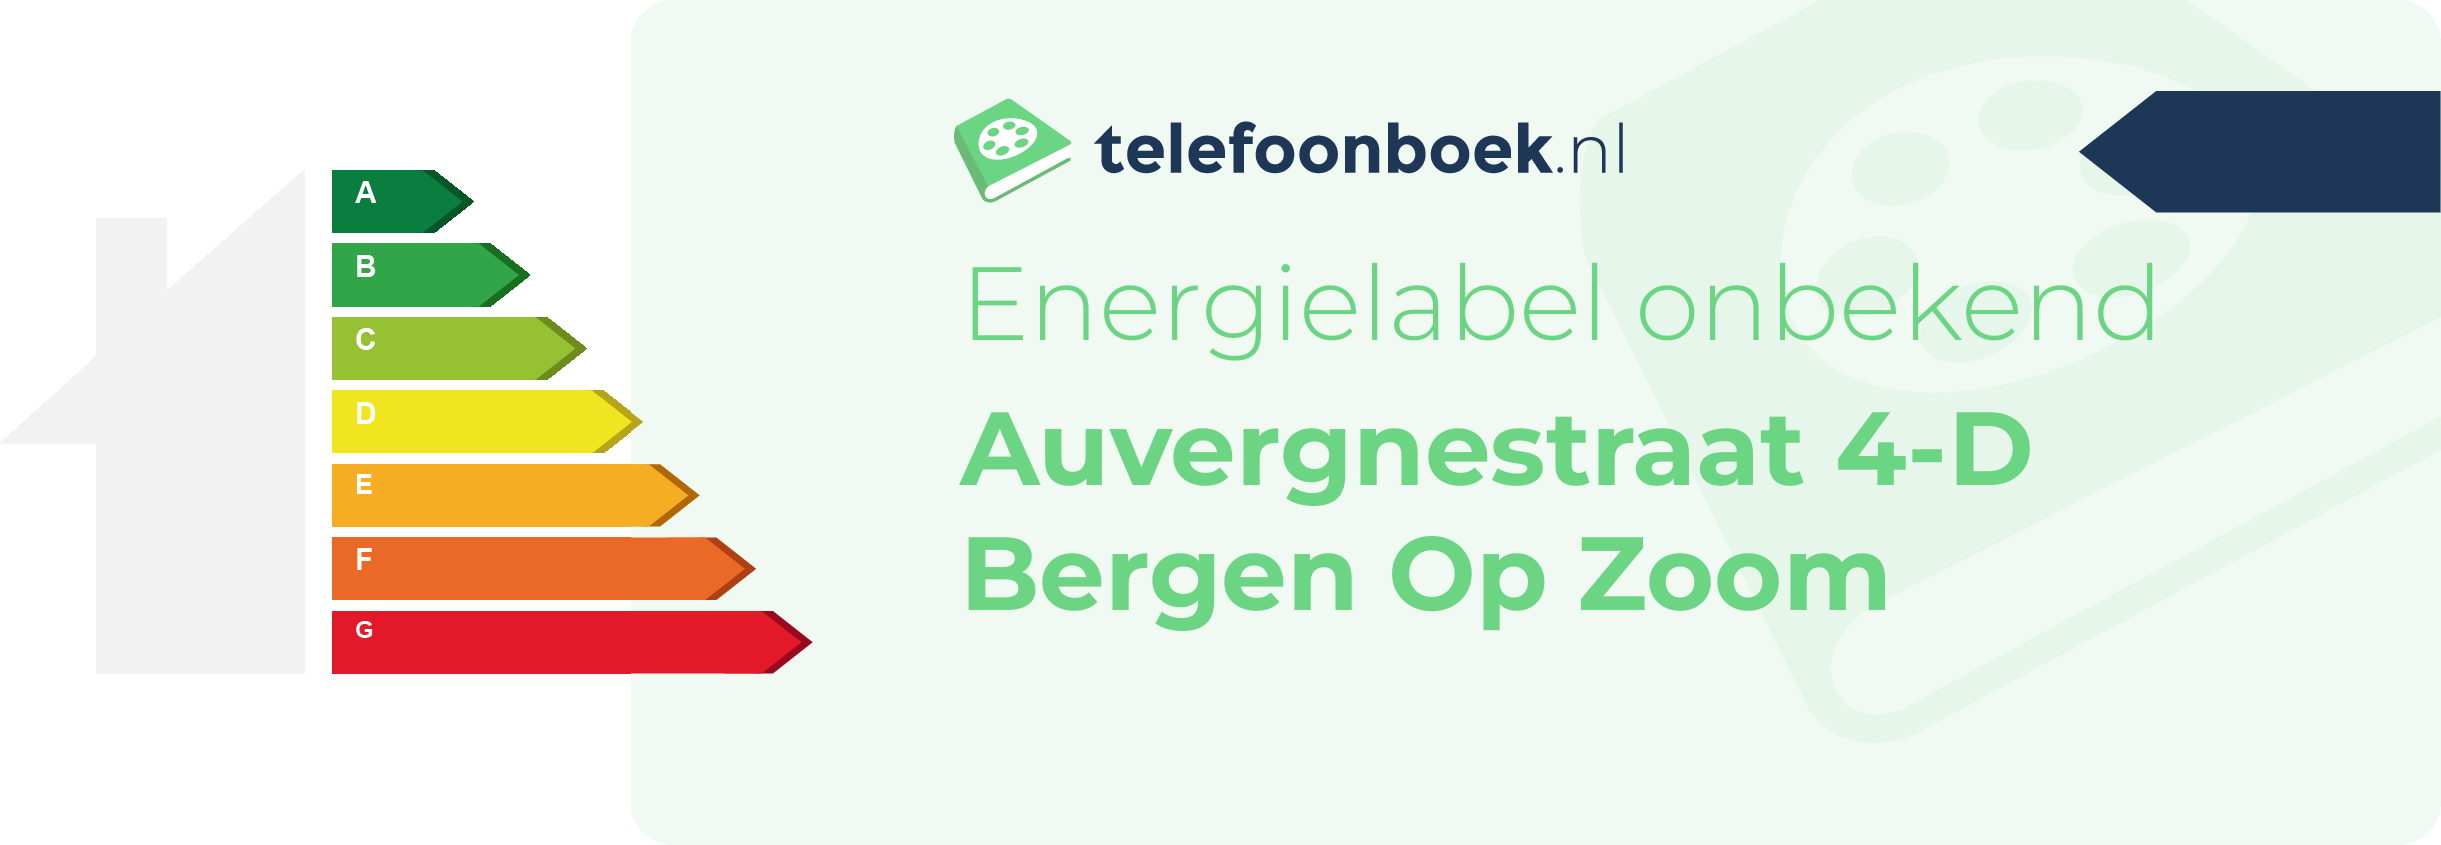 Energielabel Auvergnestraat 4-D Bergen Op Zoom